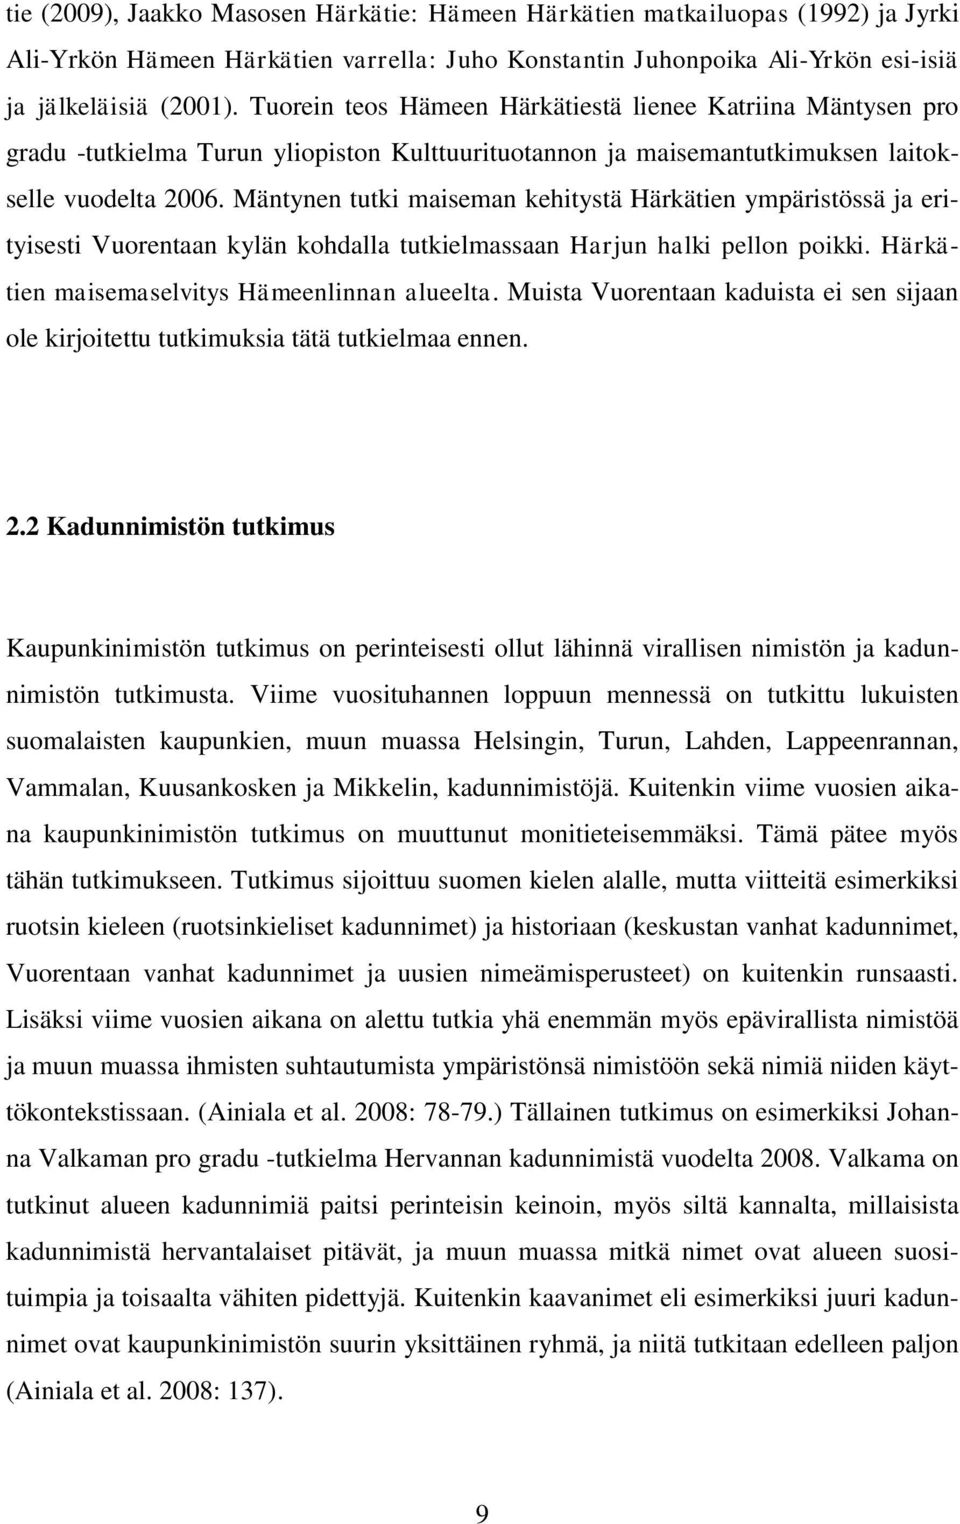 Mäntynen tutki maiseman kehitystä Härkätien ympäristössä ja erityisesti Vuorentaan kylän kohdalla tutkielmassaan Harjun halki pellon poikki. Härkätien maisemaselvitys Hämeenlinnan alueelta.